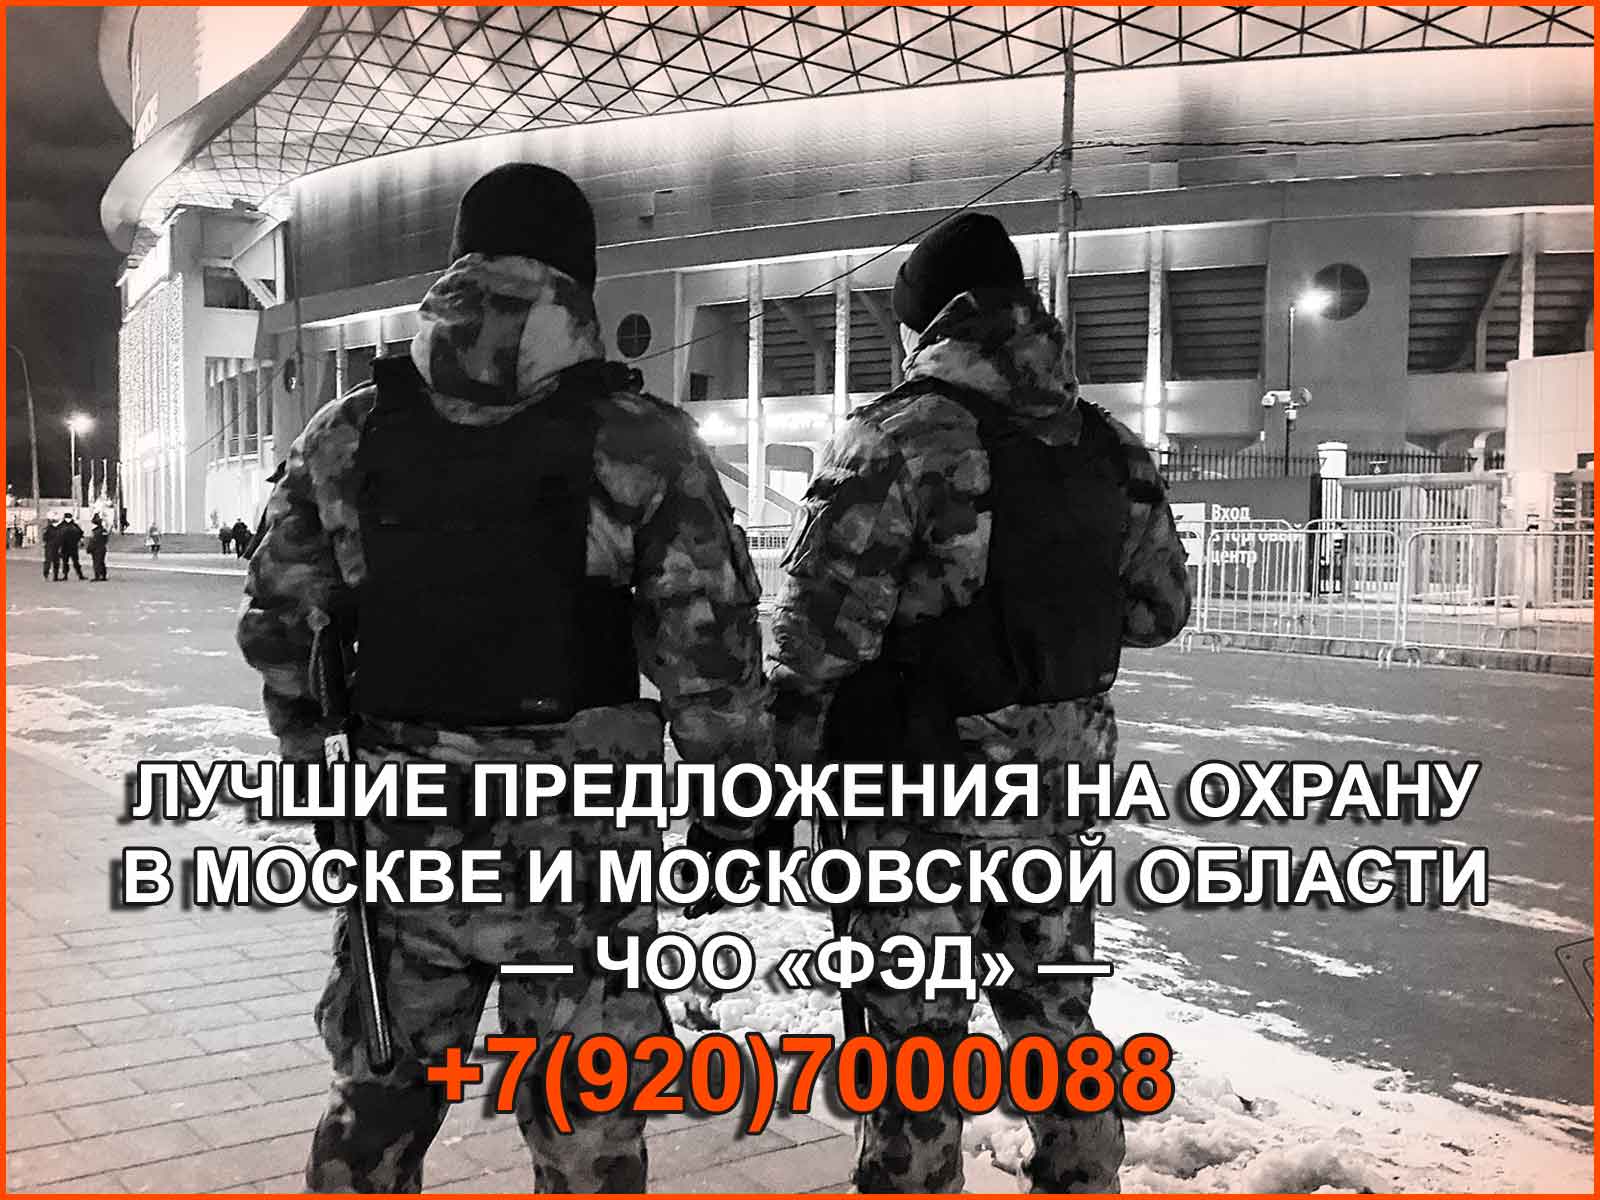 ЧОО «ФЭД» осуществляет охранные услуги в  Москве и Московской области на выгодных условиях для клиентов